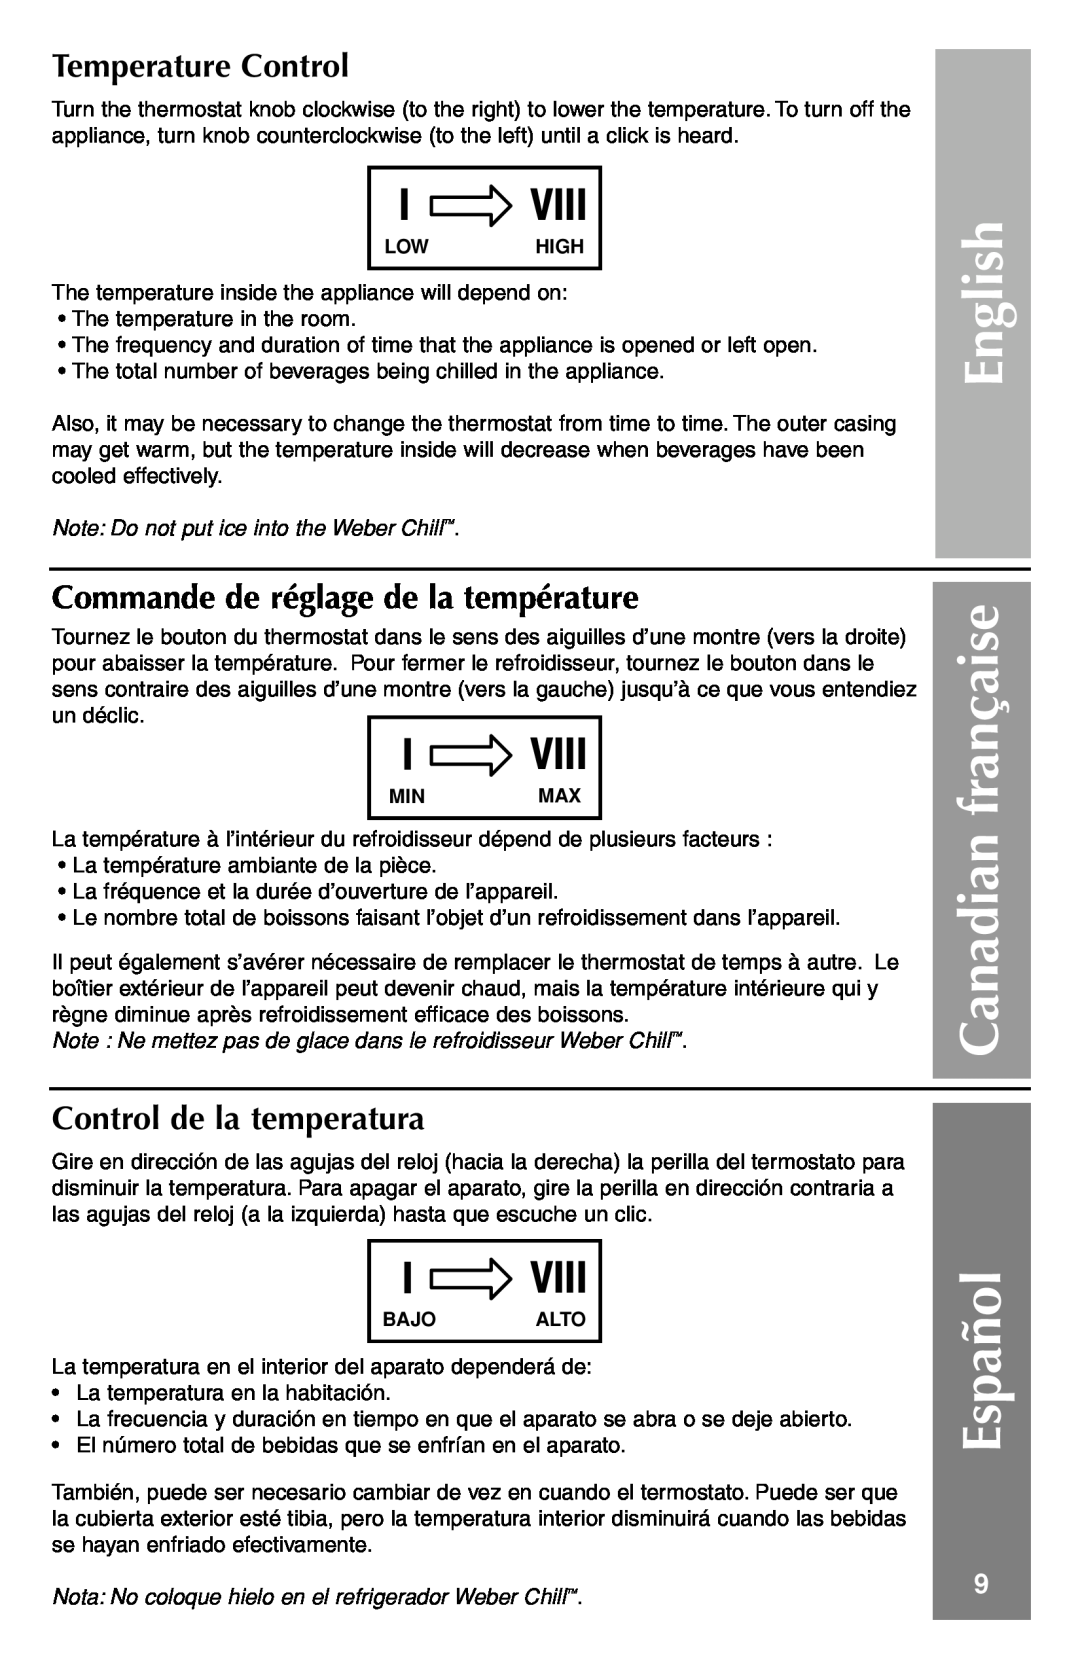 Weber Refrigerator Español, Temperature Control, Commande de réglage de la température, Control de la temperatura, English 